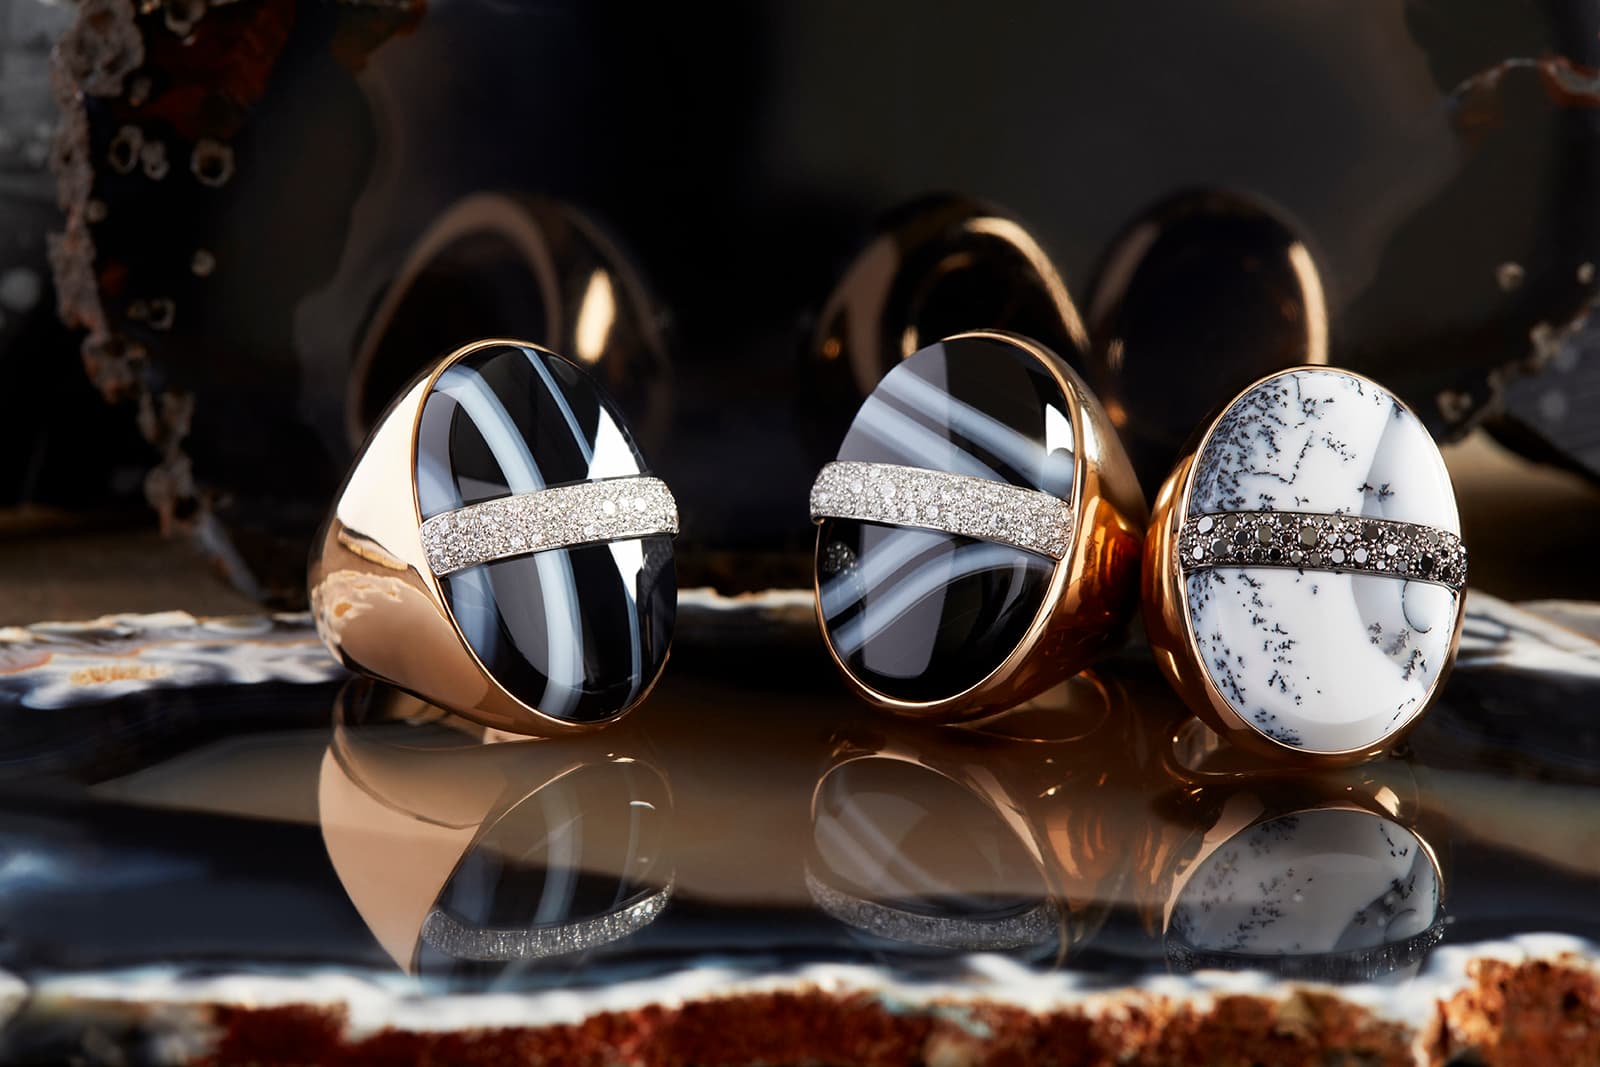 Кольца Pomellato Imperial Zebra с черно-белым агатом и бриллиантами, а также кольцо Japanese Samurai с дендритовым опалом и черными бриллиантами, все из розового золота